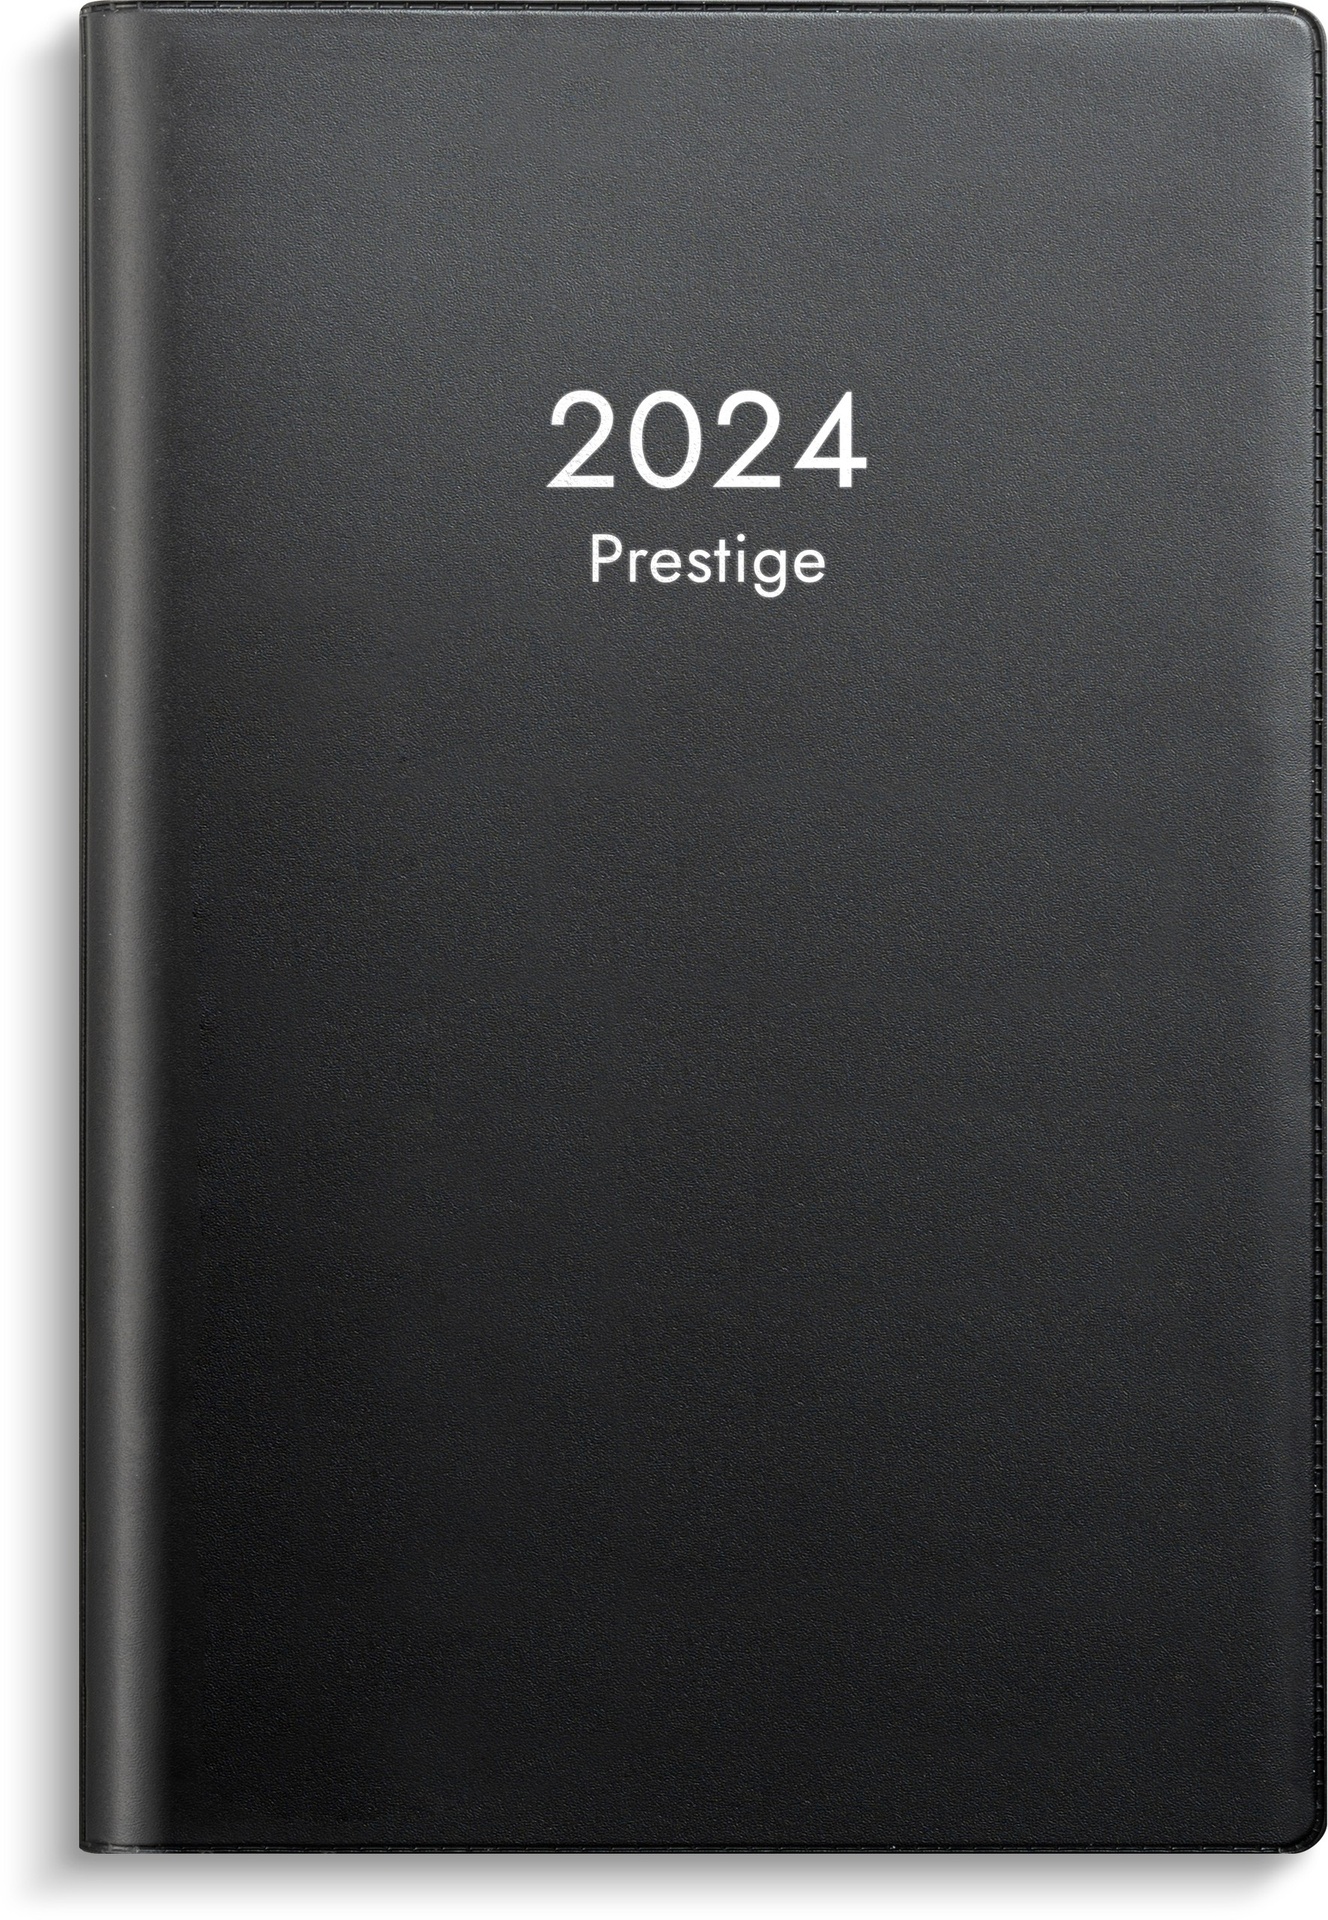 [61334324] Prestige svart plast 2024